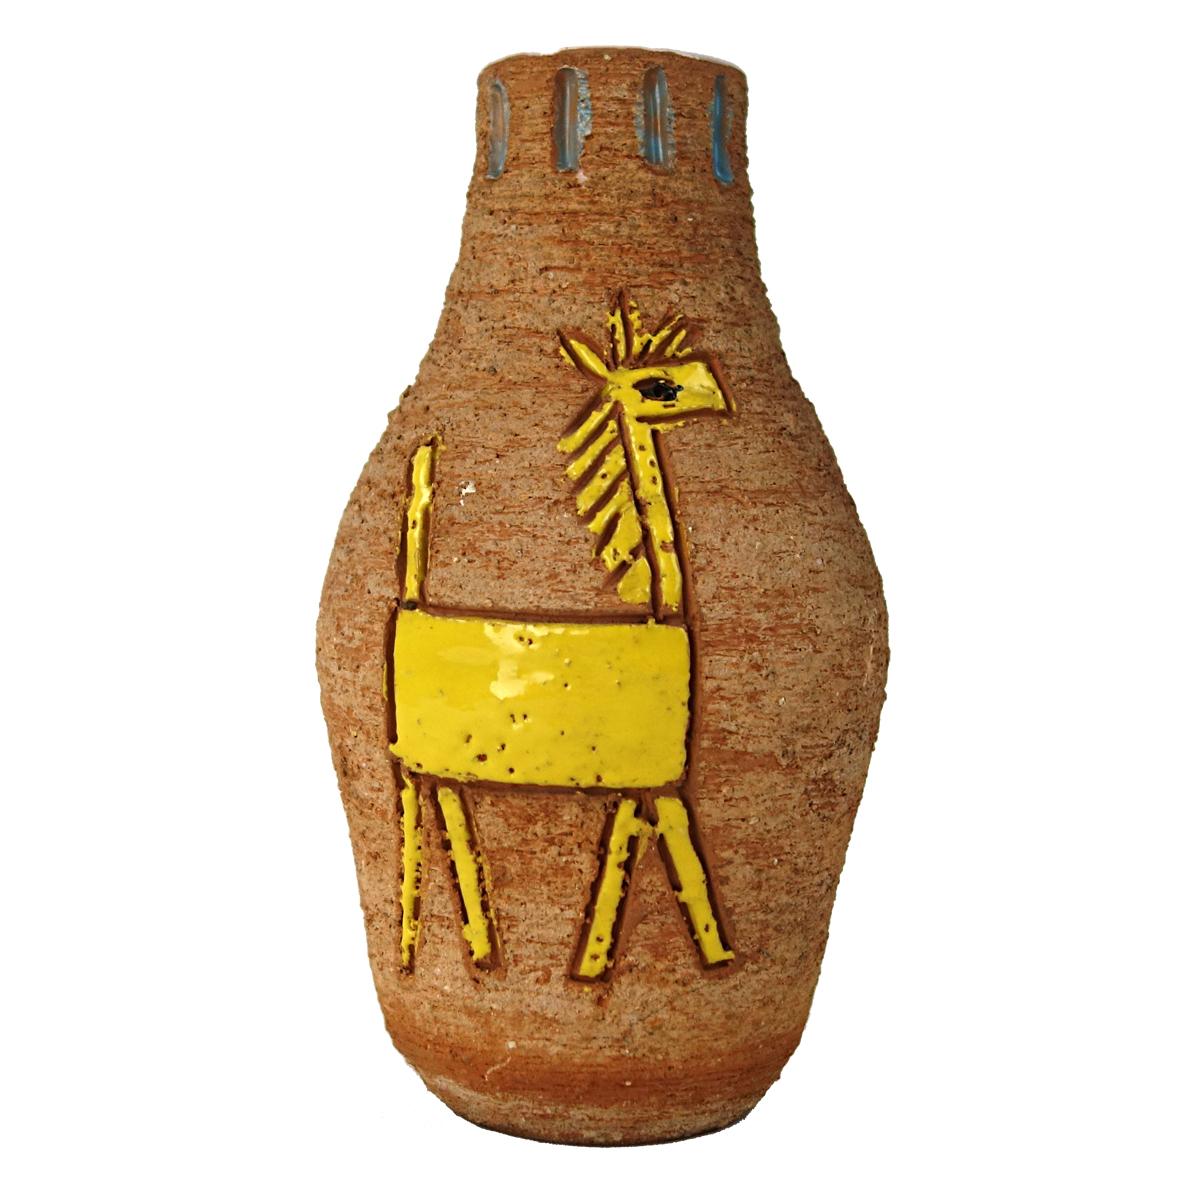 Intéressant vase en céramique fabriqué par Fratelli Fancuillacci. Le vase lui-même n'a pas été émaillé, mais les deux chevaux stylisés qui lui servent de décor - l'un vert, l'autre jaune - ont reçu un émaillage. Cela donne non seulement une